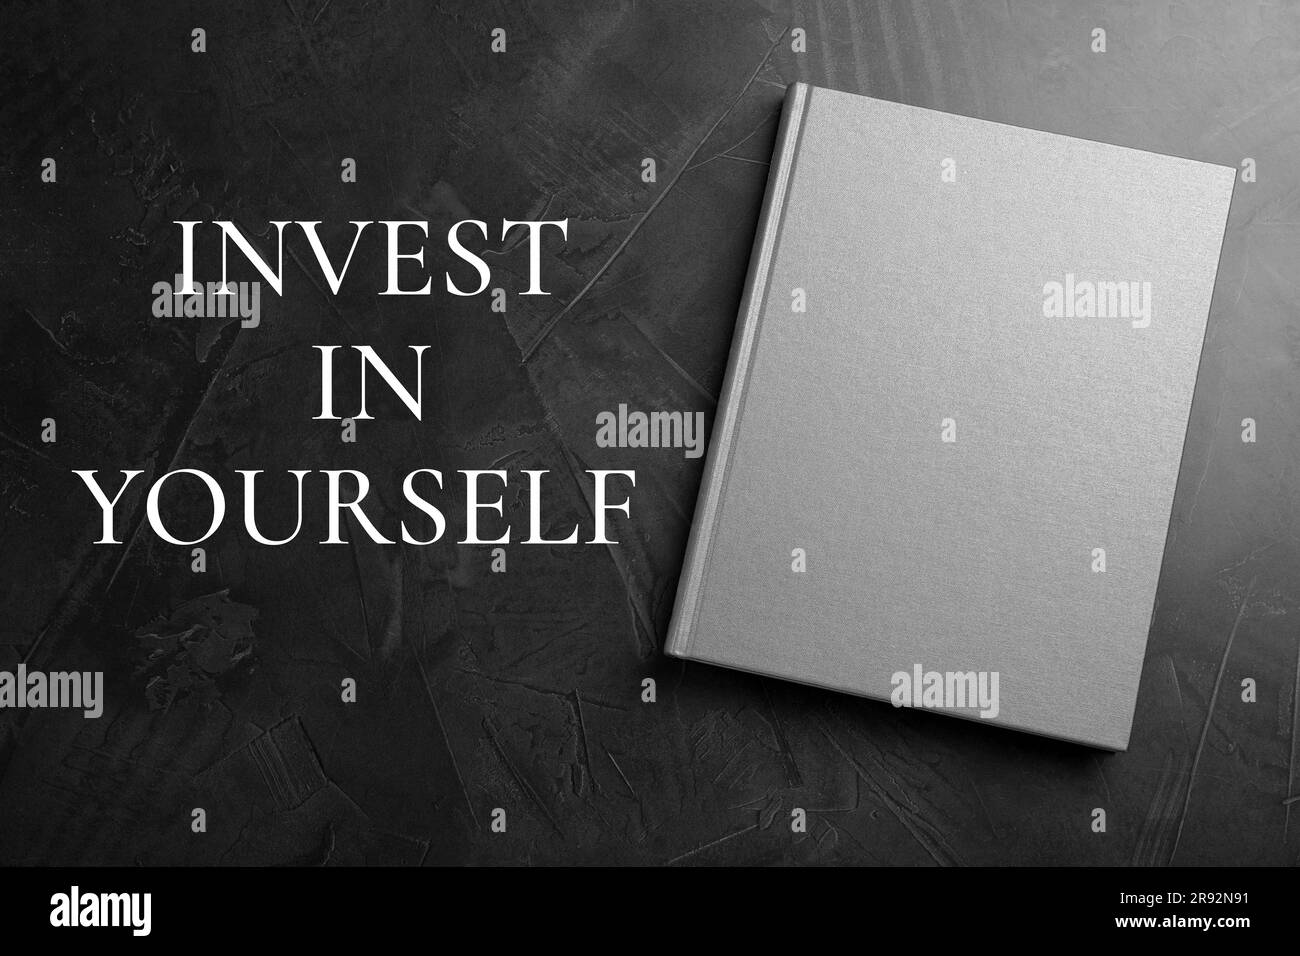 Investite in voi stessi, affermazione. Libro e parole sul tavolo nero, vista dall'alto Foto Stock